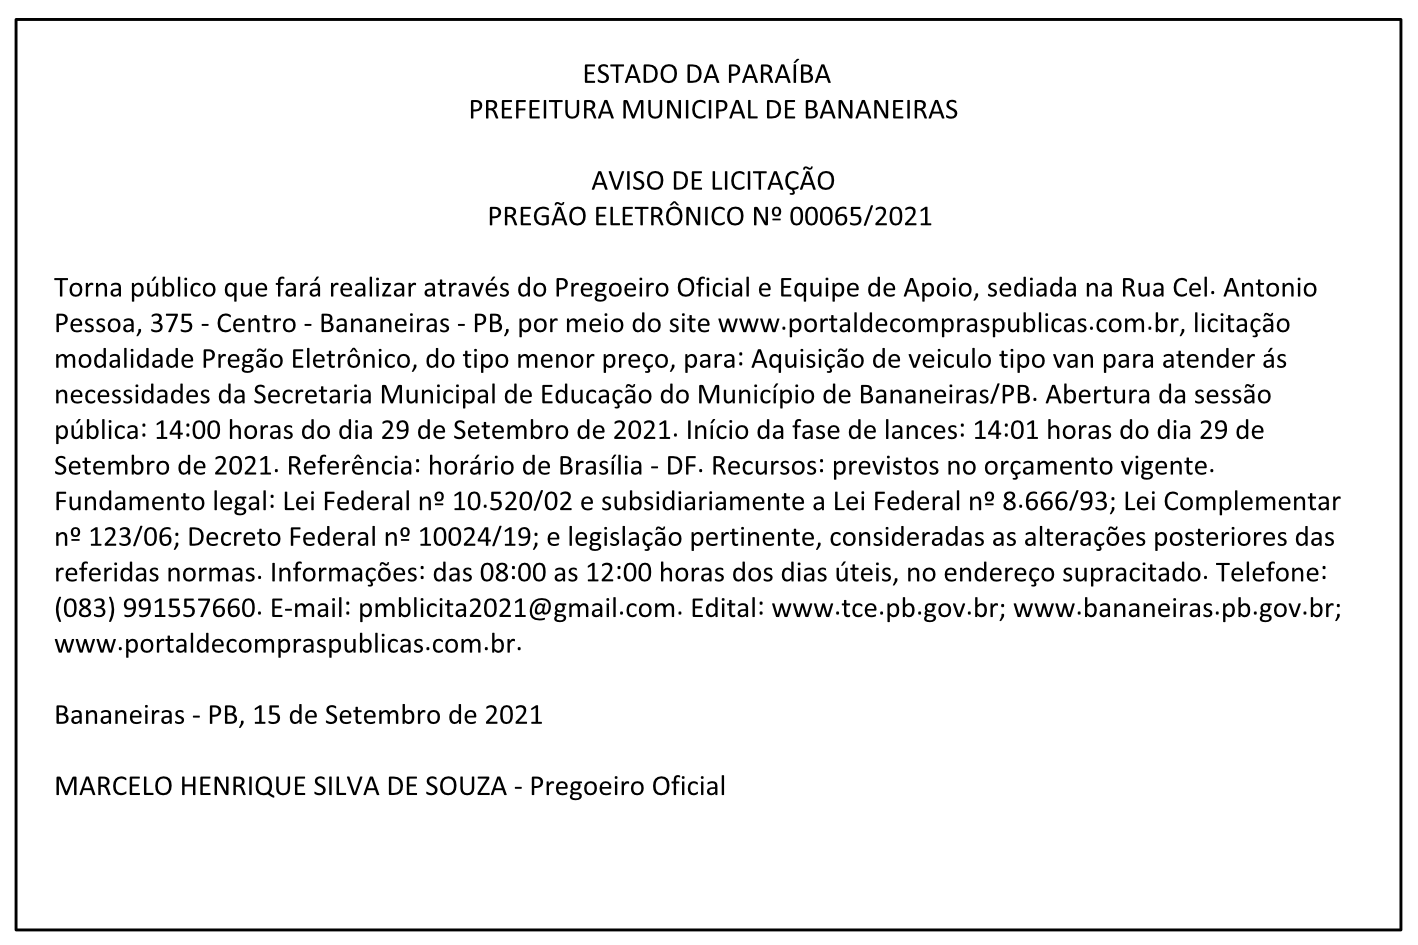 PREFEITURA MUNICIPAL DE BANANEIRAS – AVISO DE LICITAÇÃO – PREGÃO ELETRÔNICO Nº 00065/2021